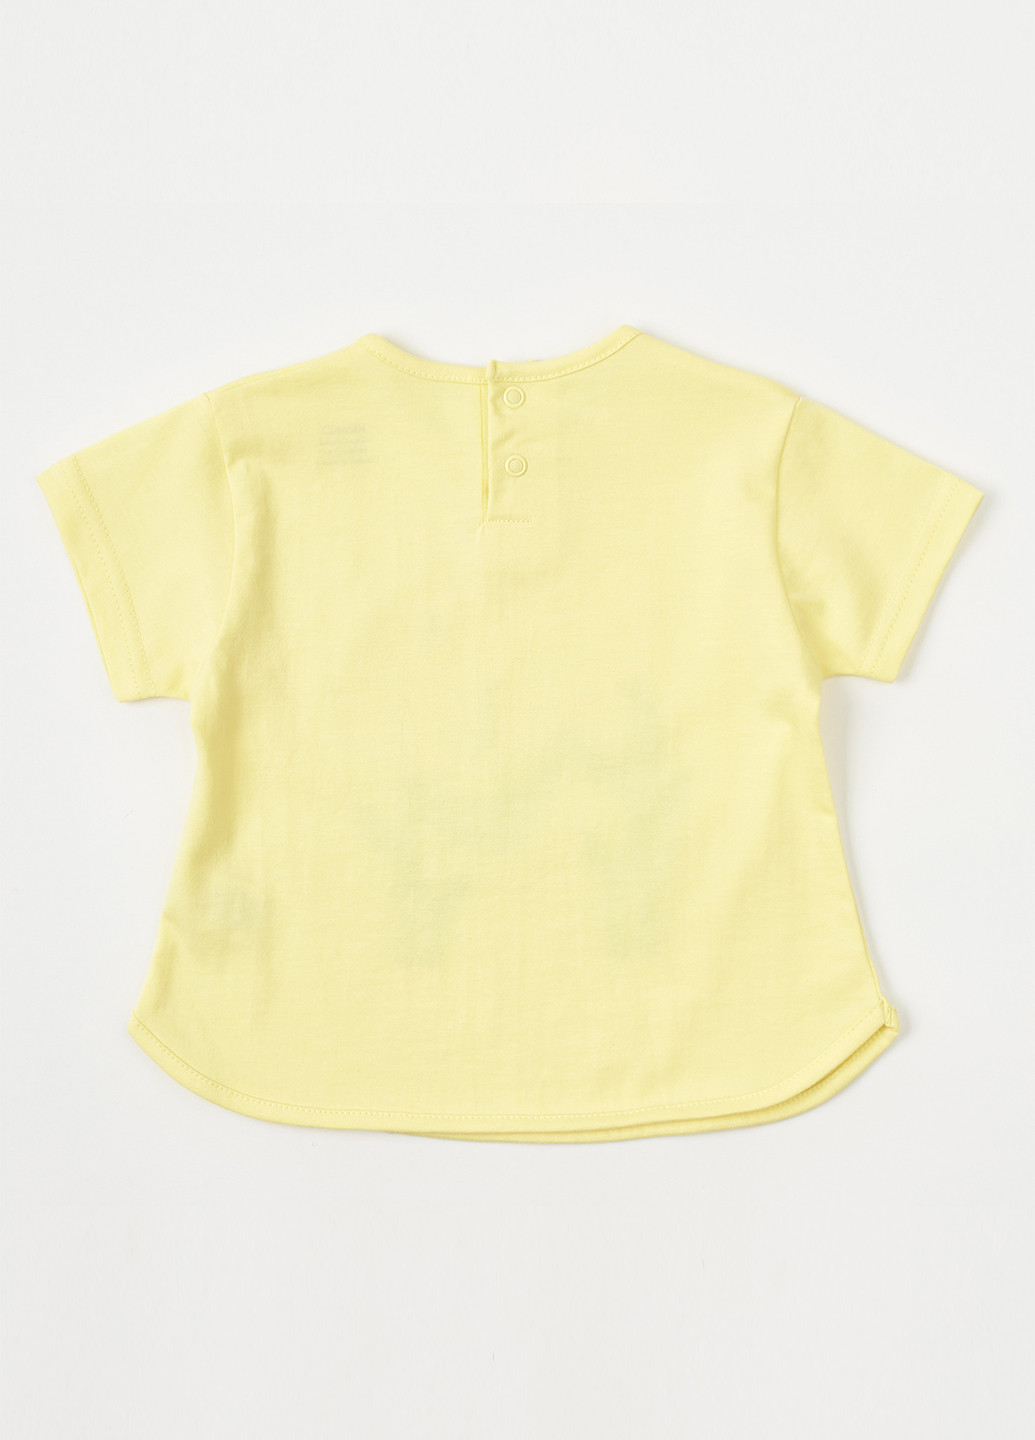 Жовта літня футболка жовта "квіти-обійми" KRAKO